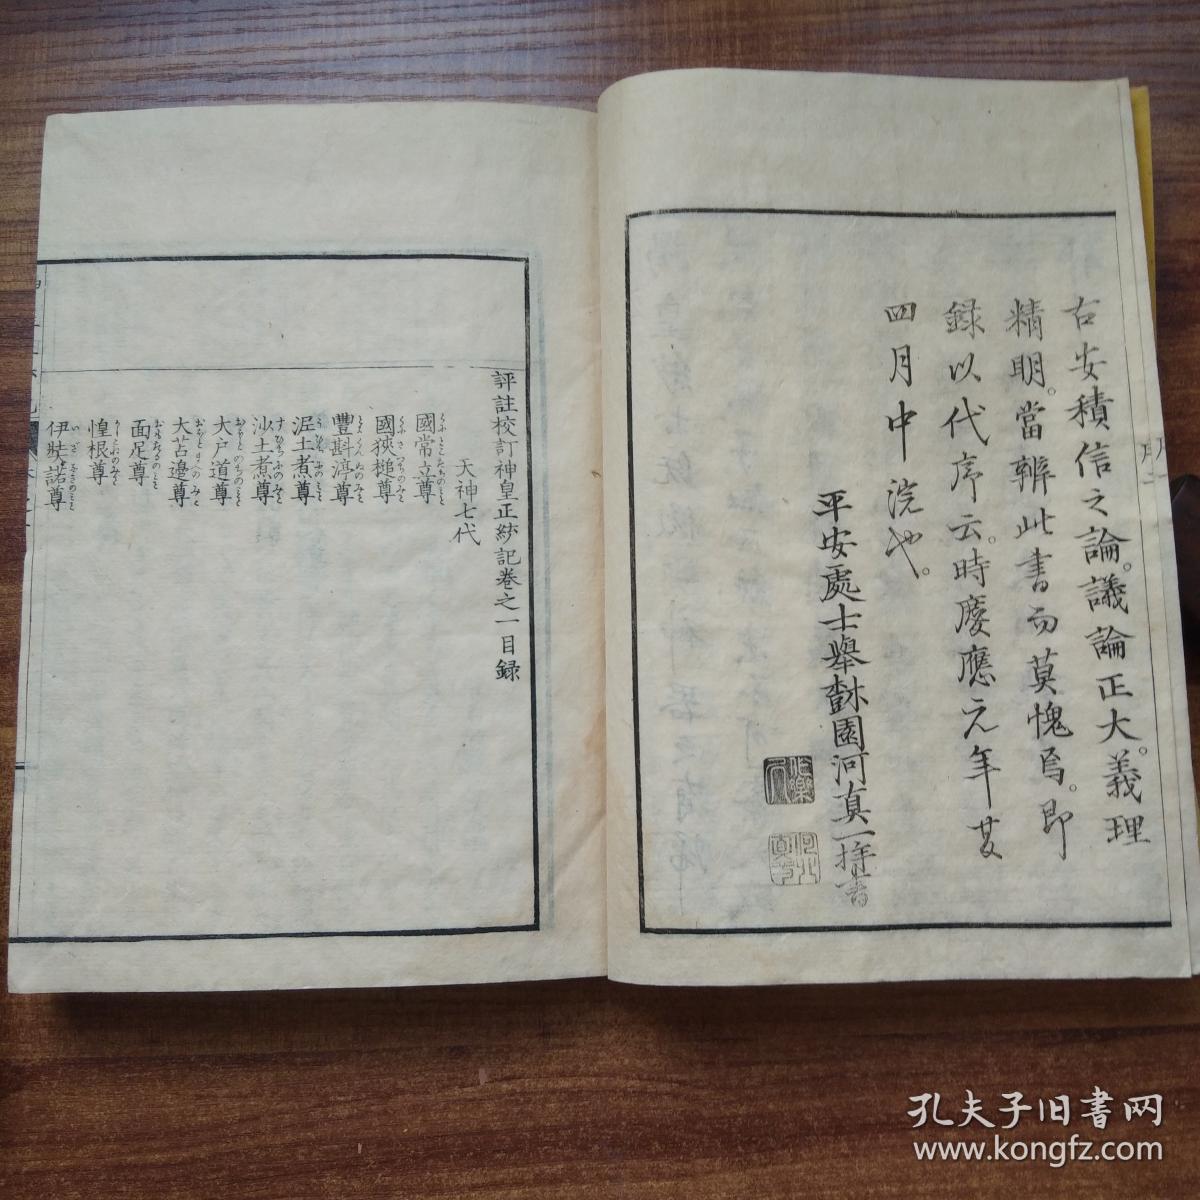 孔网稀见  《神皇正统记》6册全（第4册是配本） 明治15年（1882年）出版   上面部分汉文，下面是日文